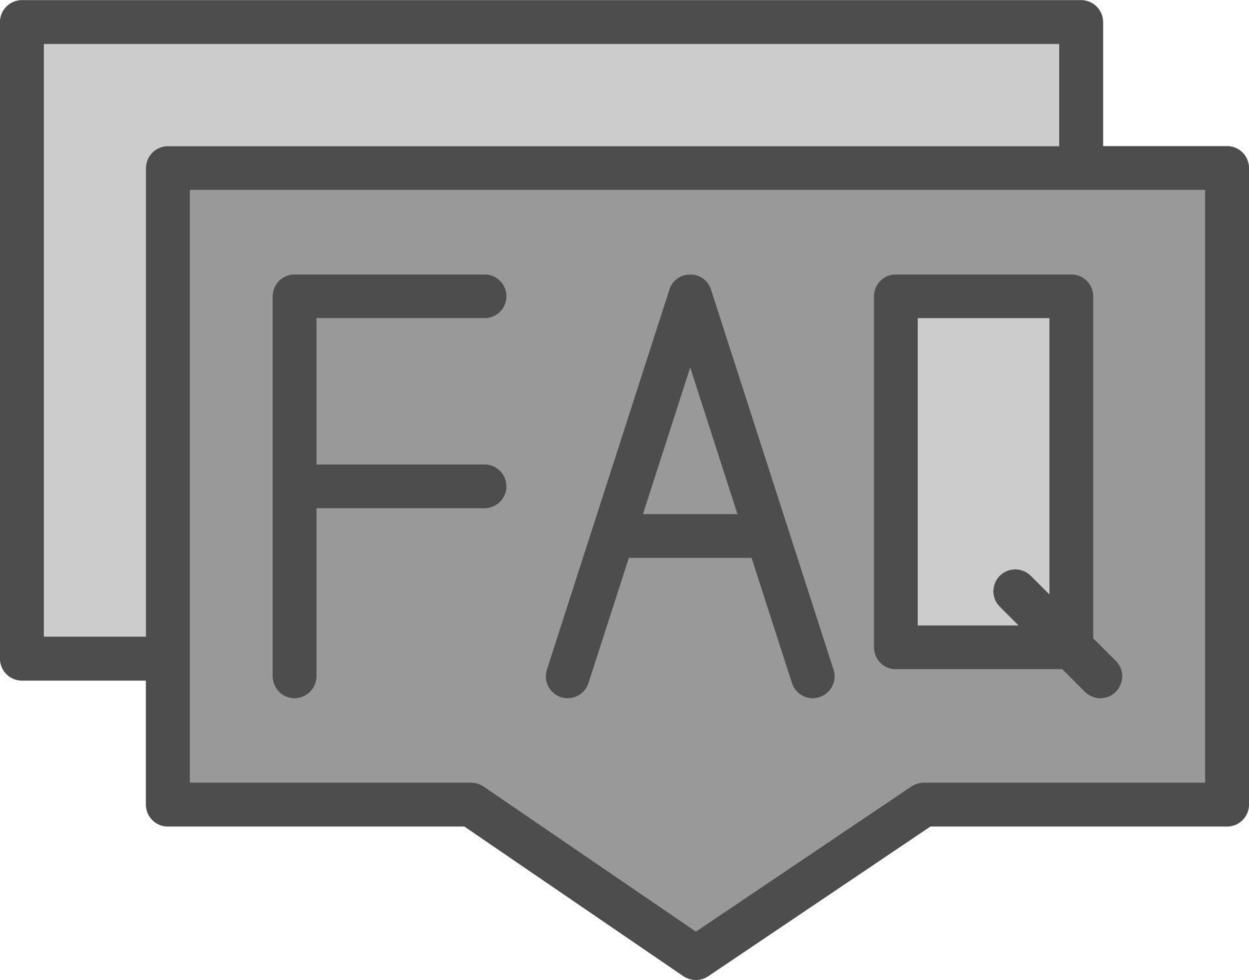 diseño de icono de vector de preguntas frecuentes